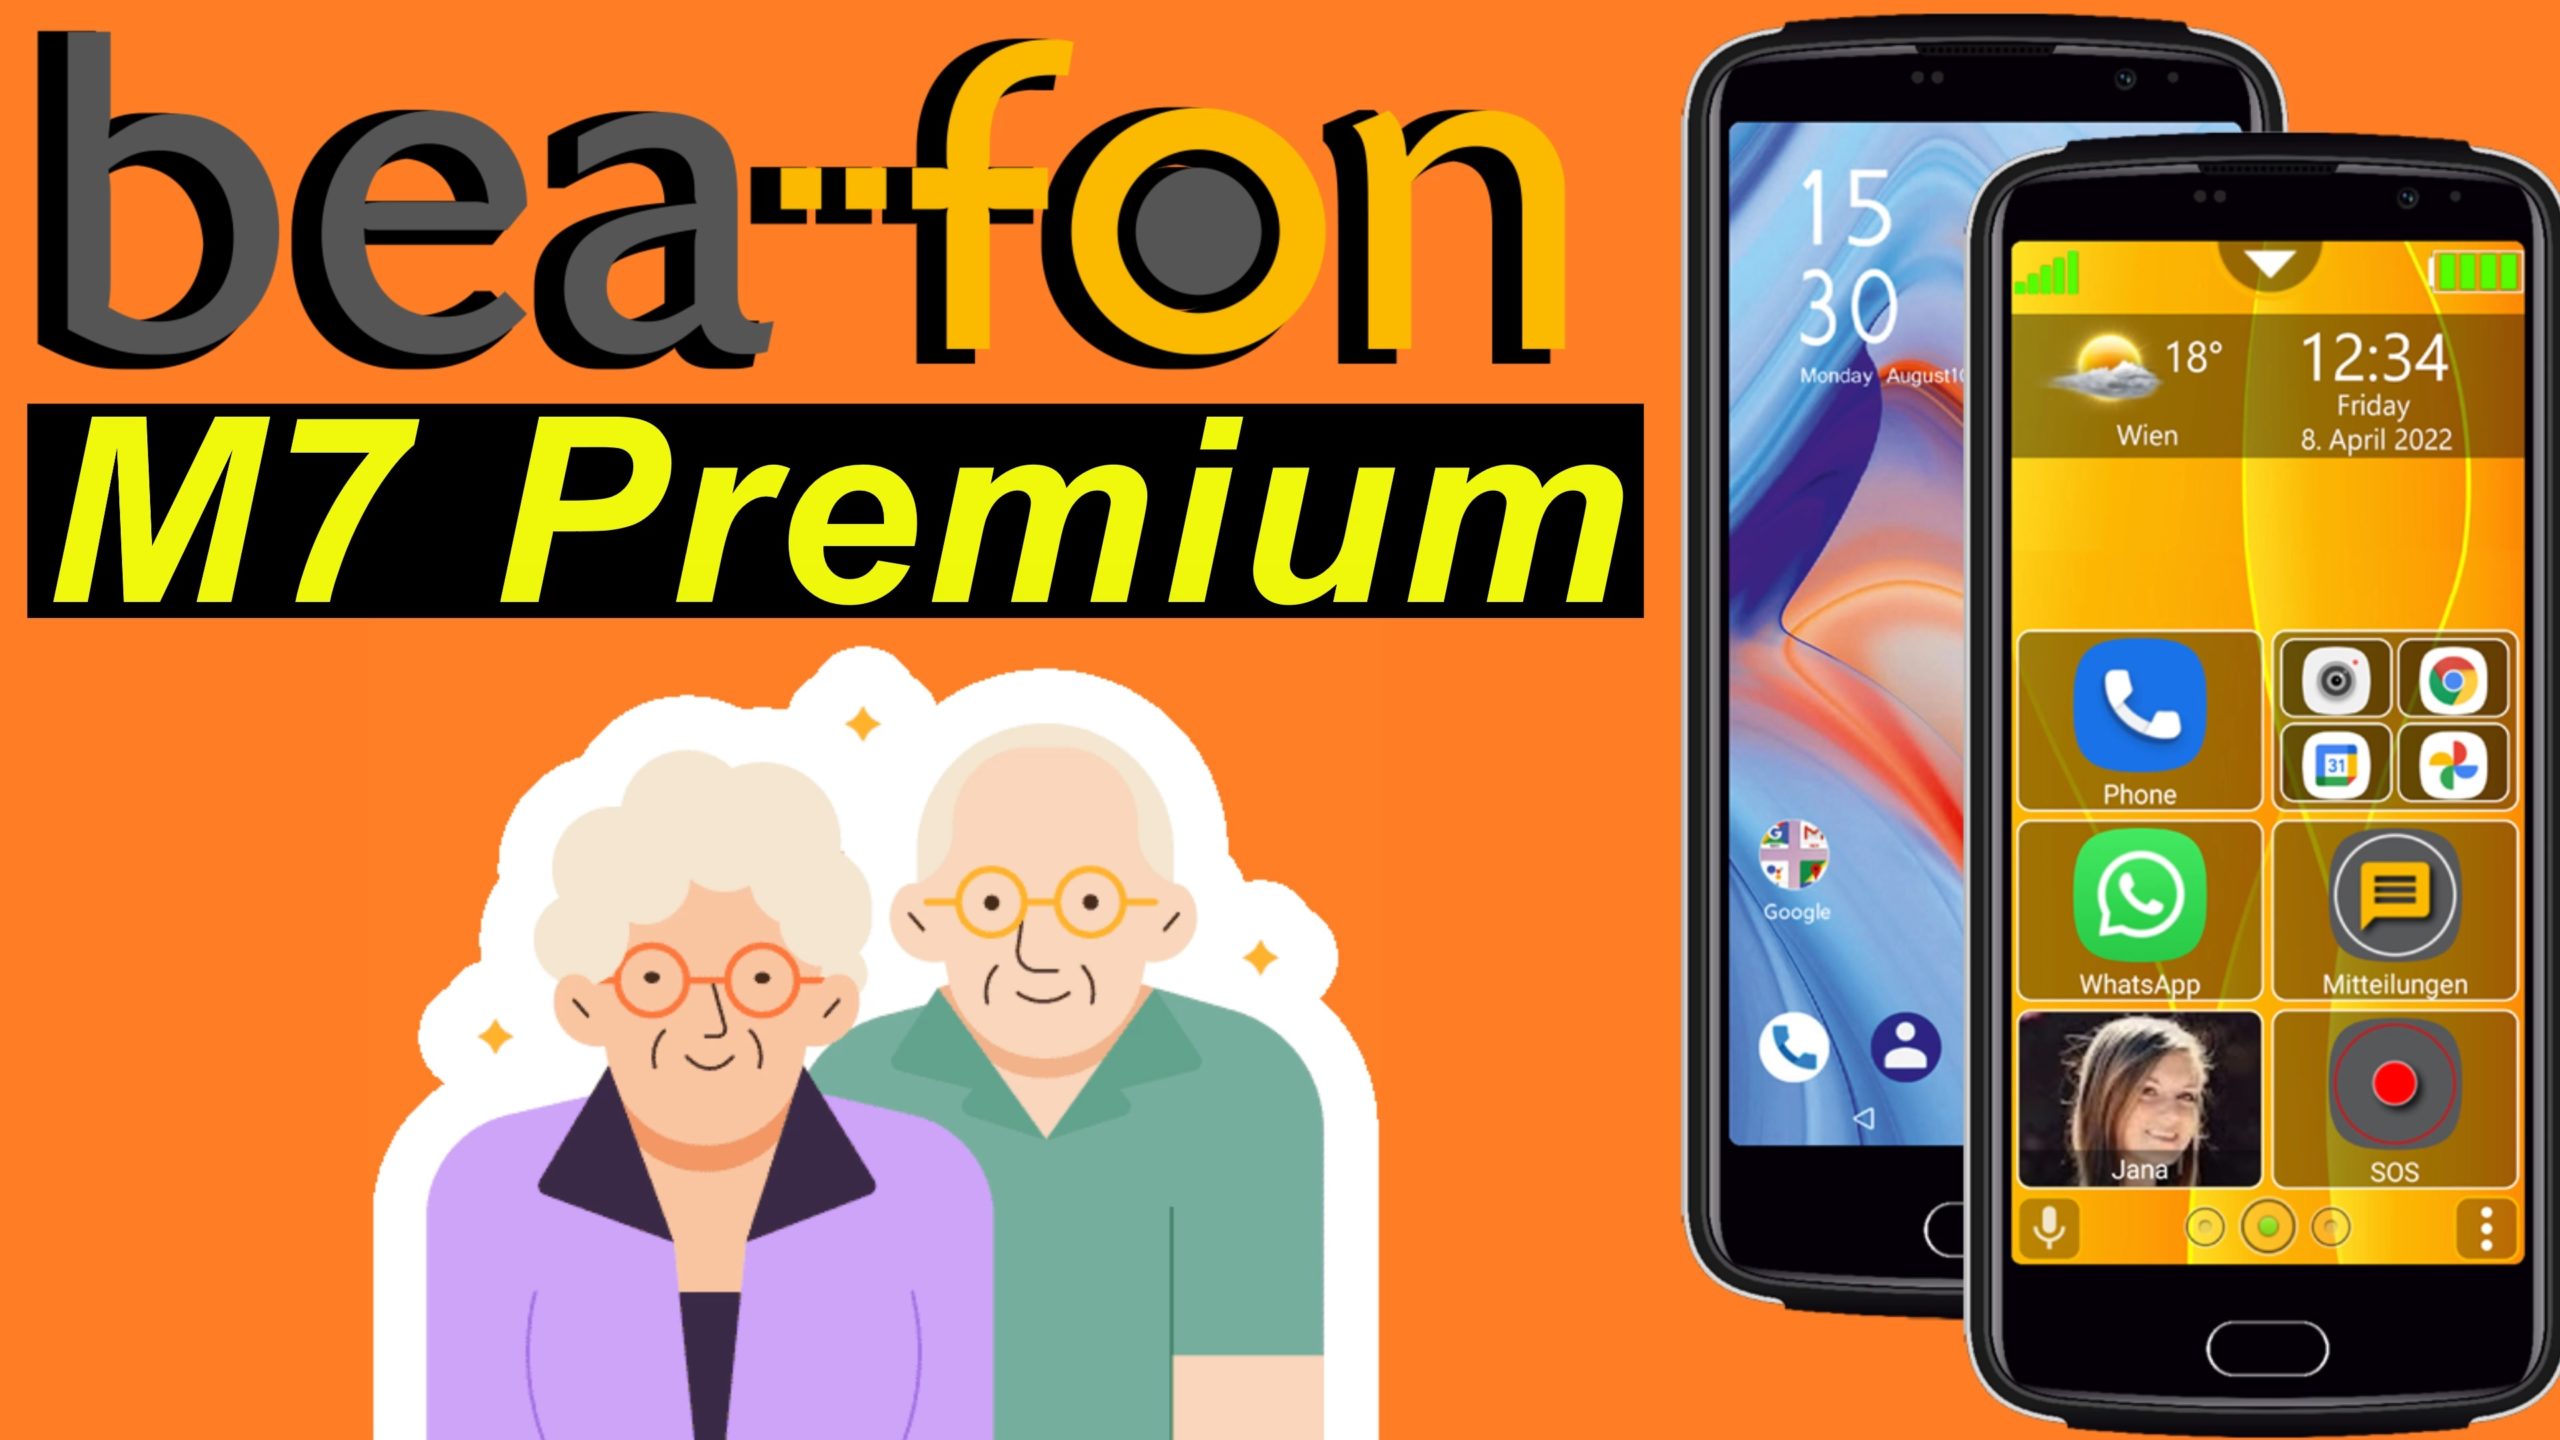 Bea-fon M7 Premium - 7 Gründe für das Senioren Smartphone